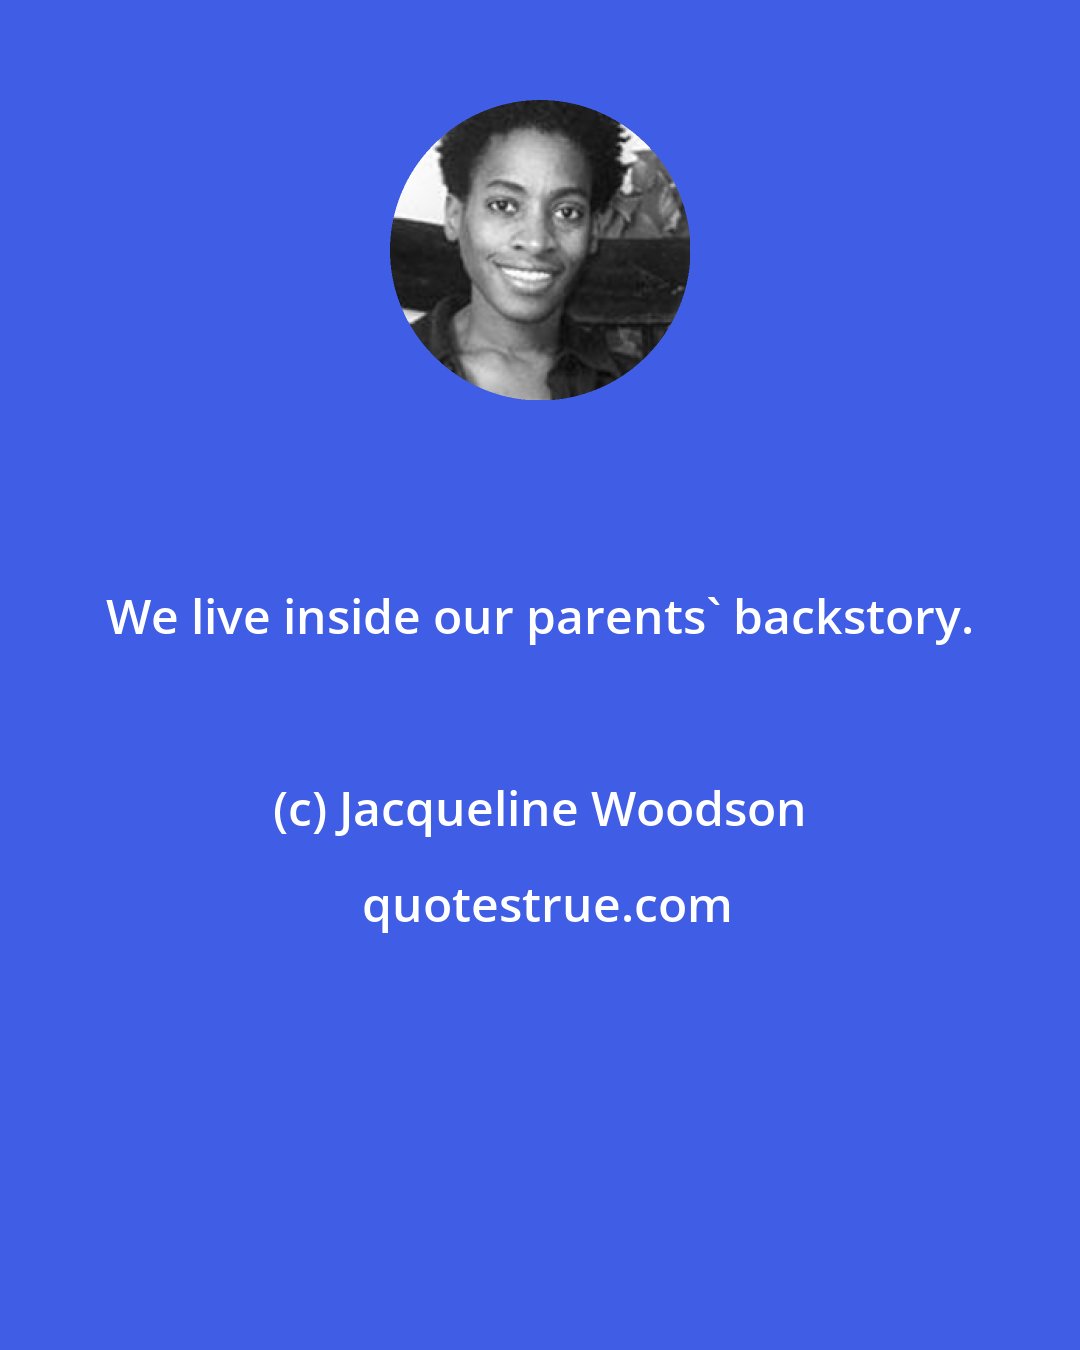 Jacqueline Woodson: We live inside our parents' backstory.